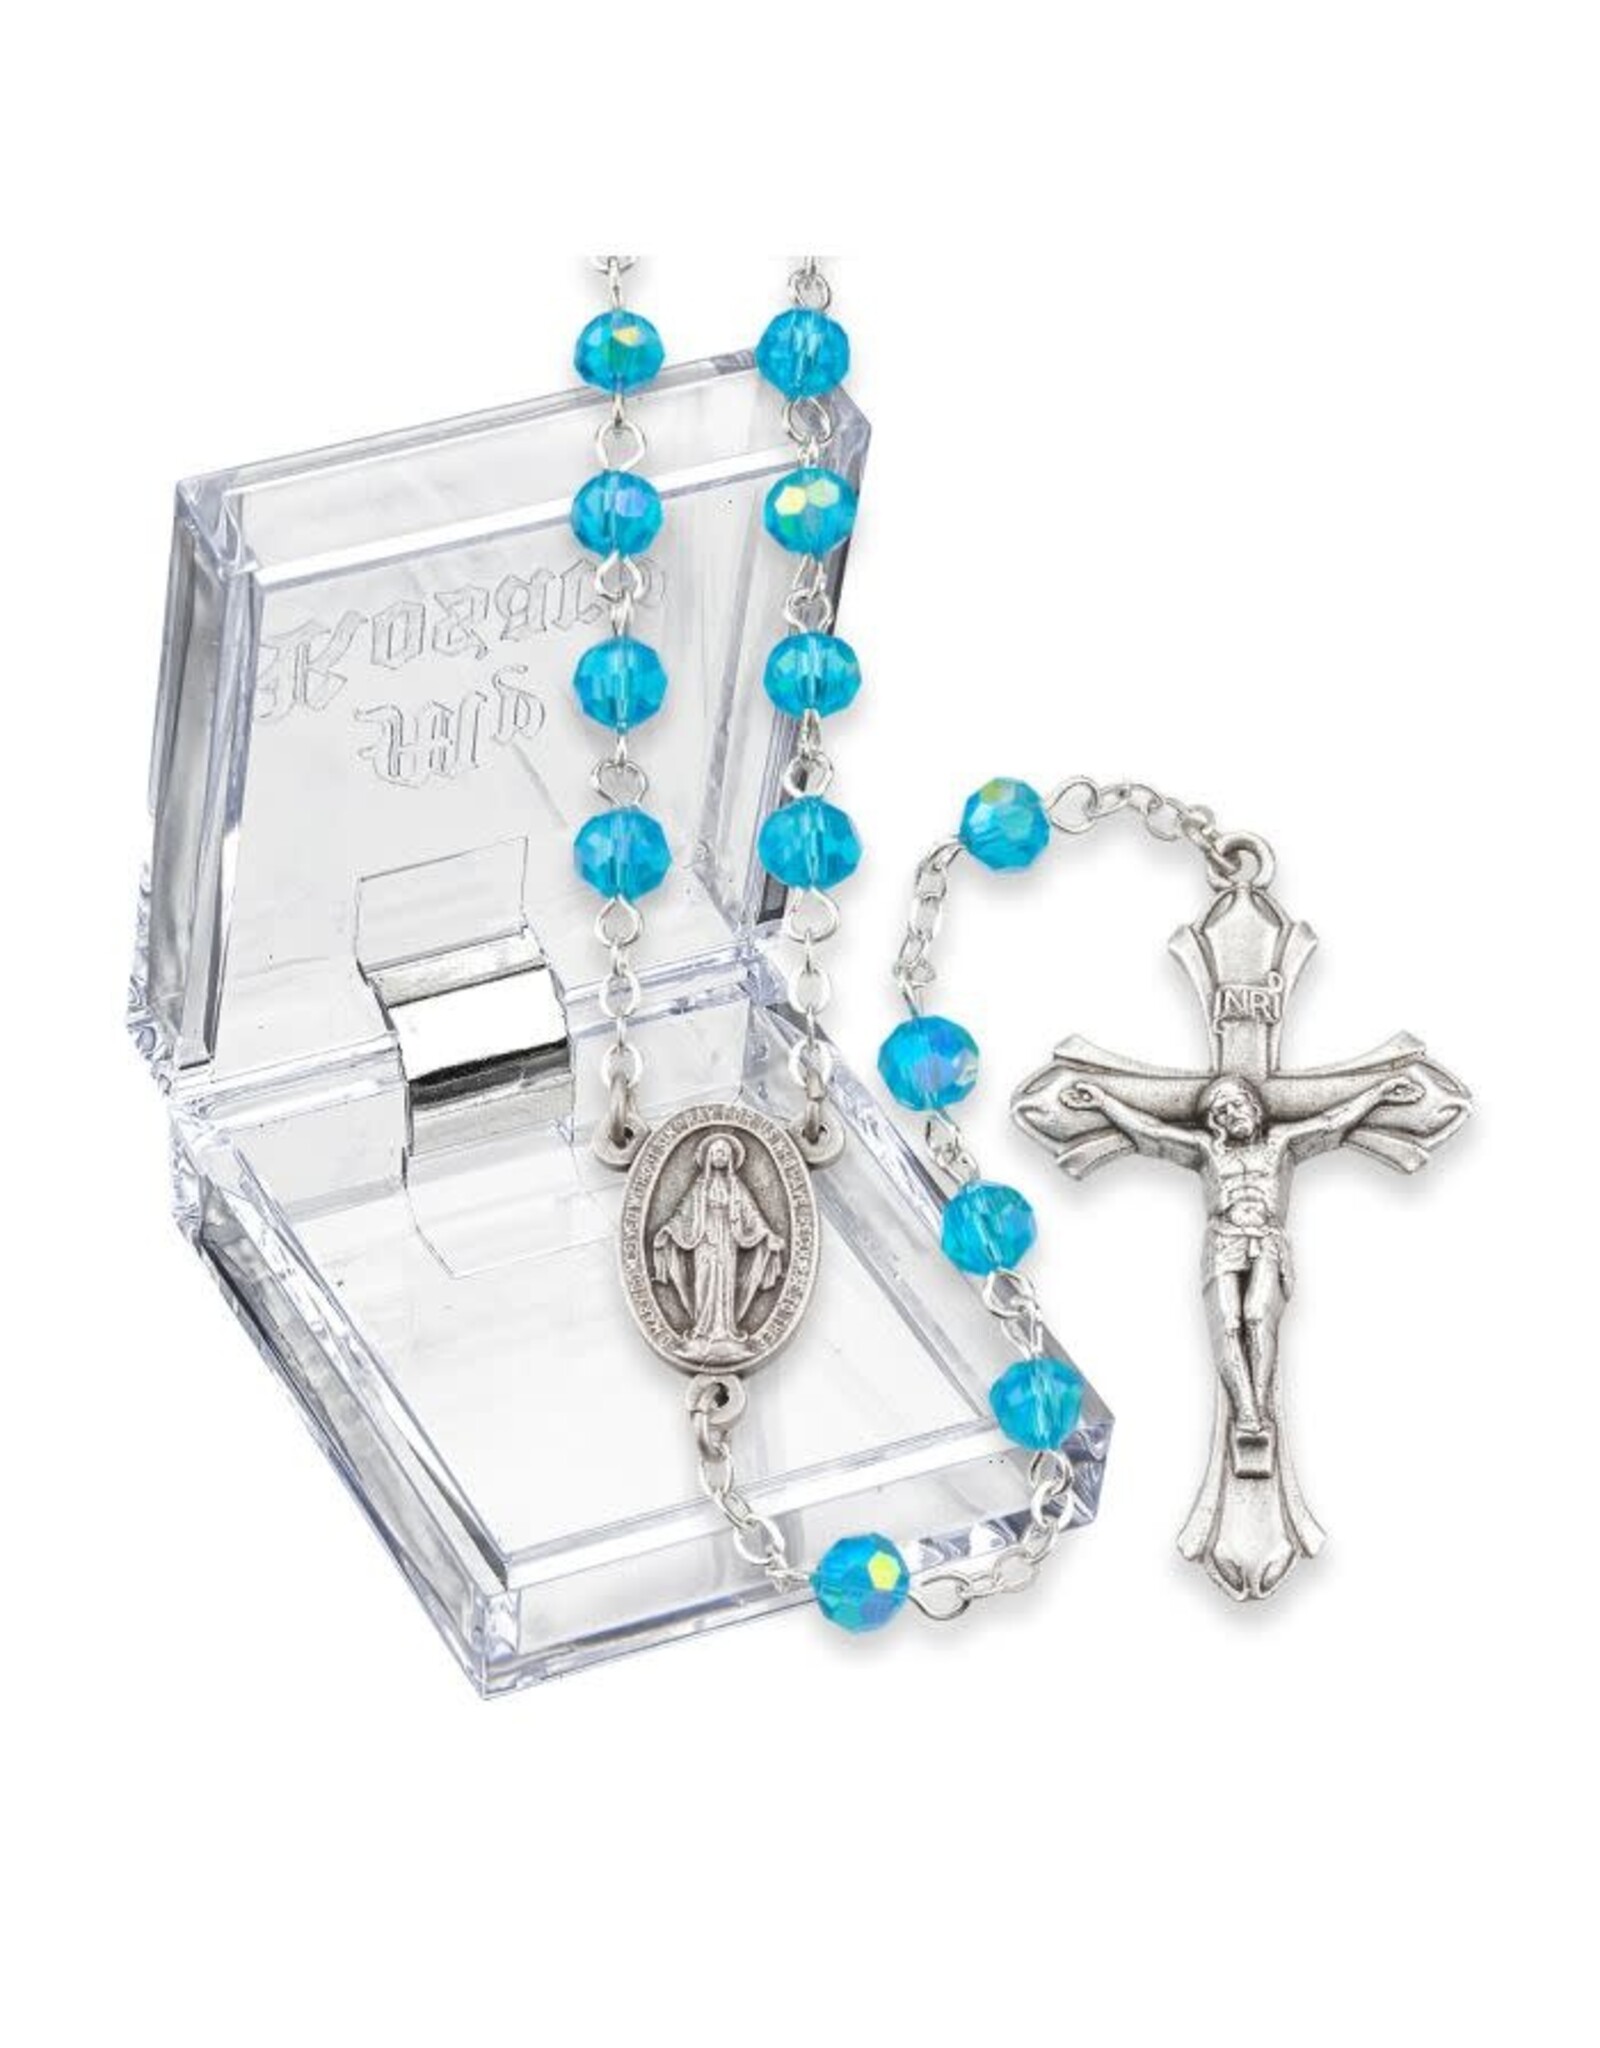 Hirten Rosary - March Birthstone, Aqua